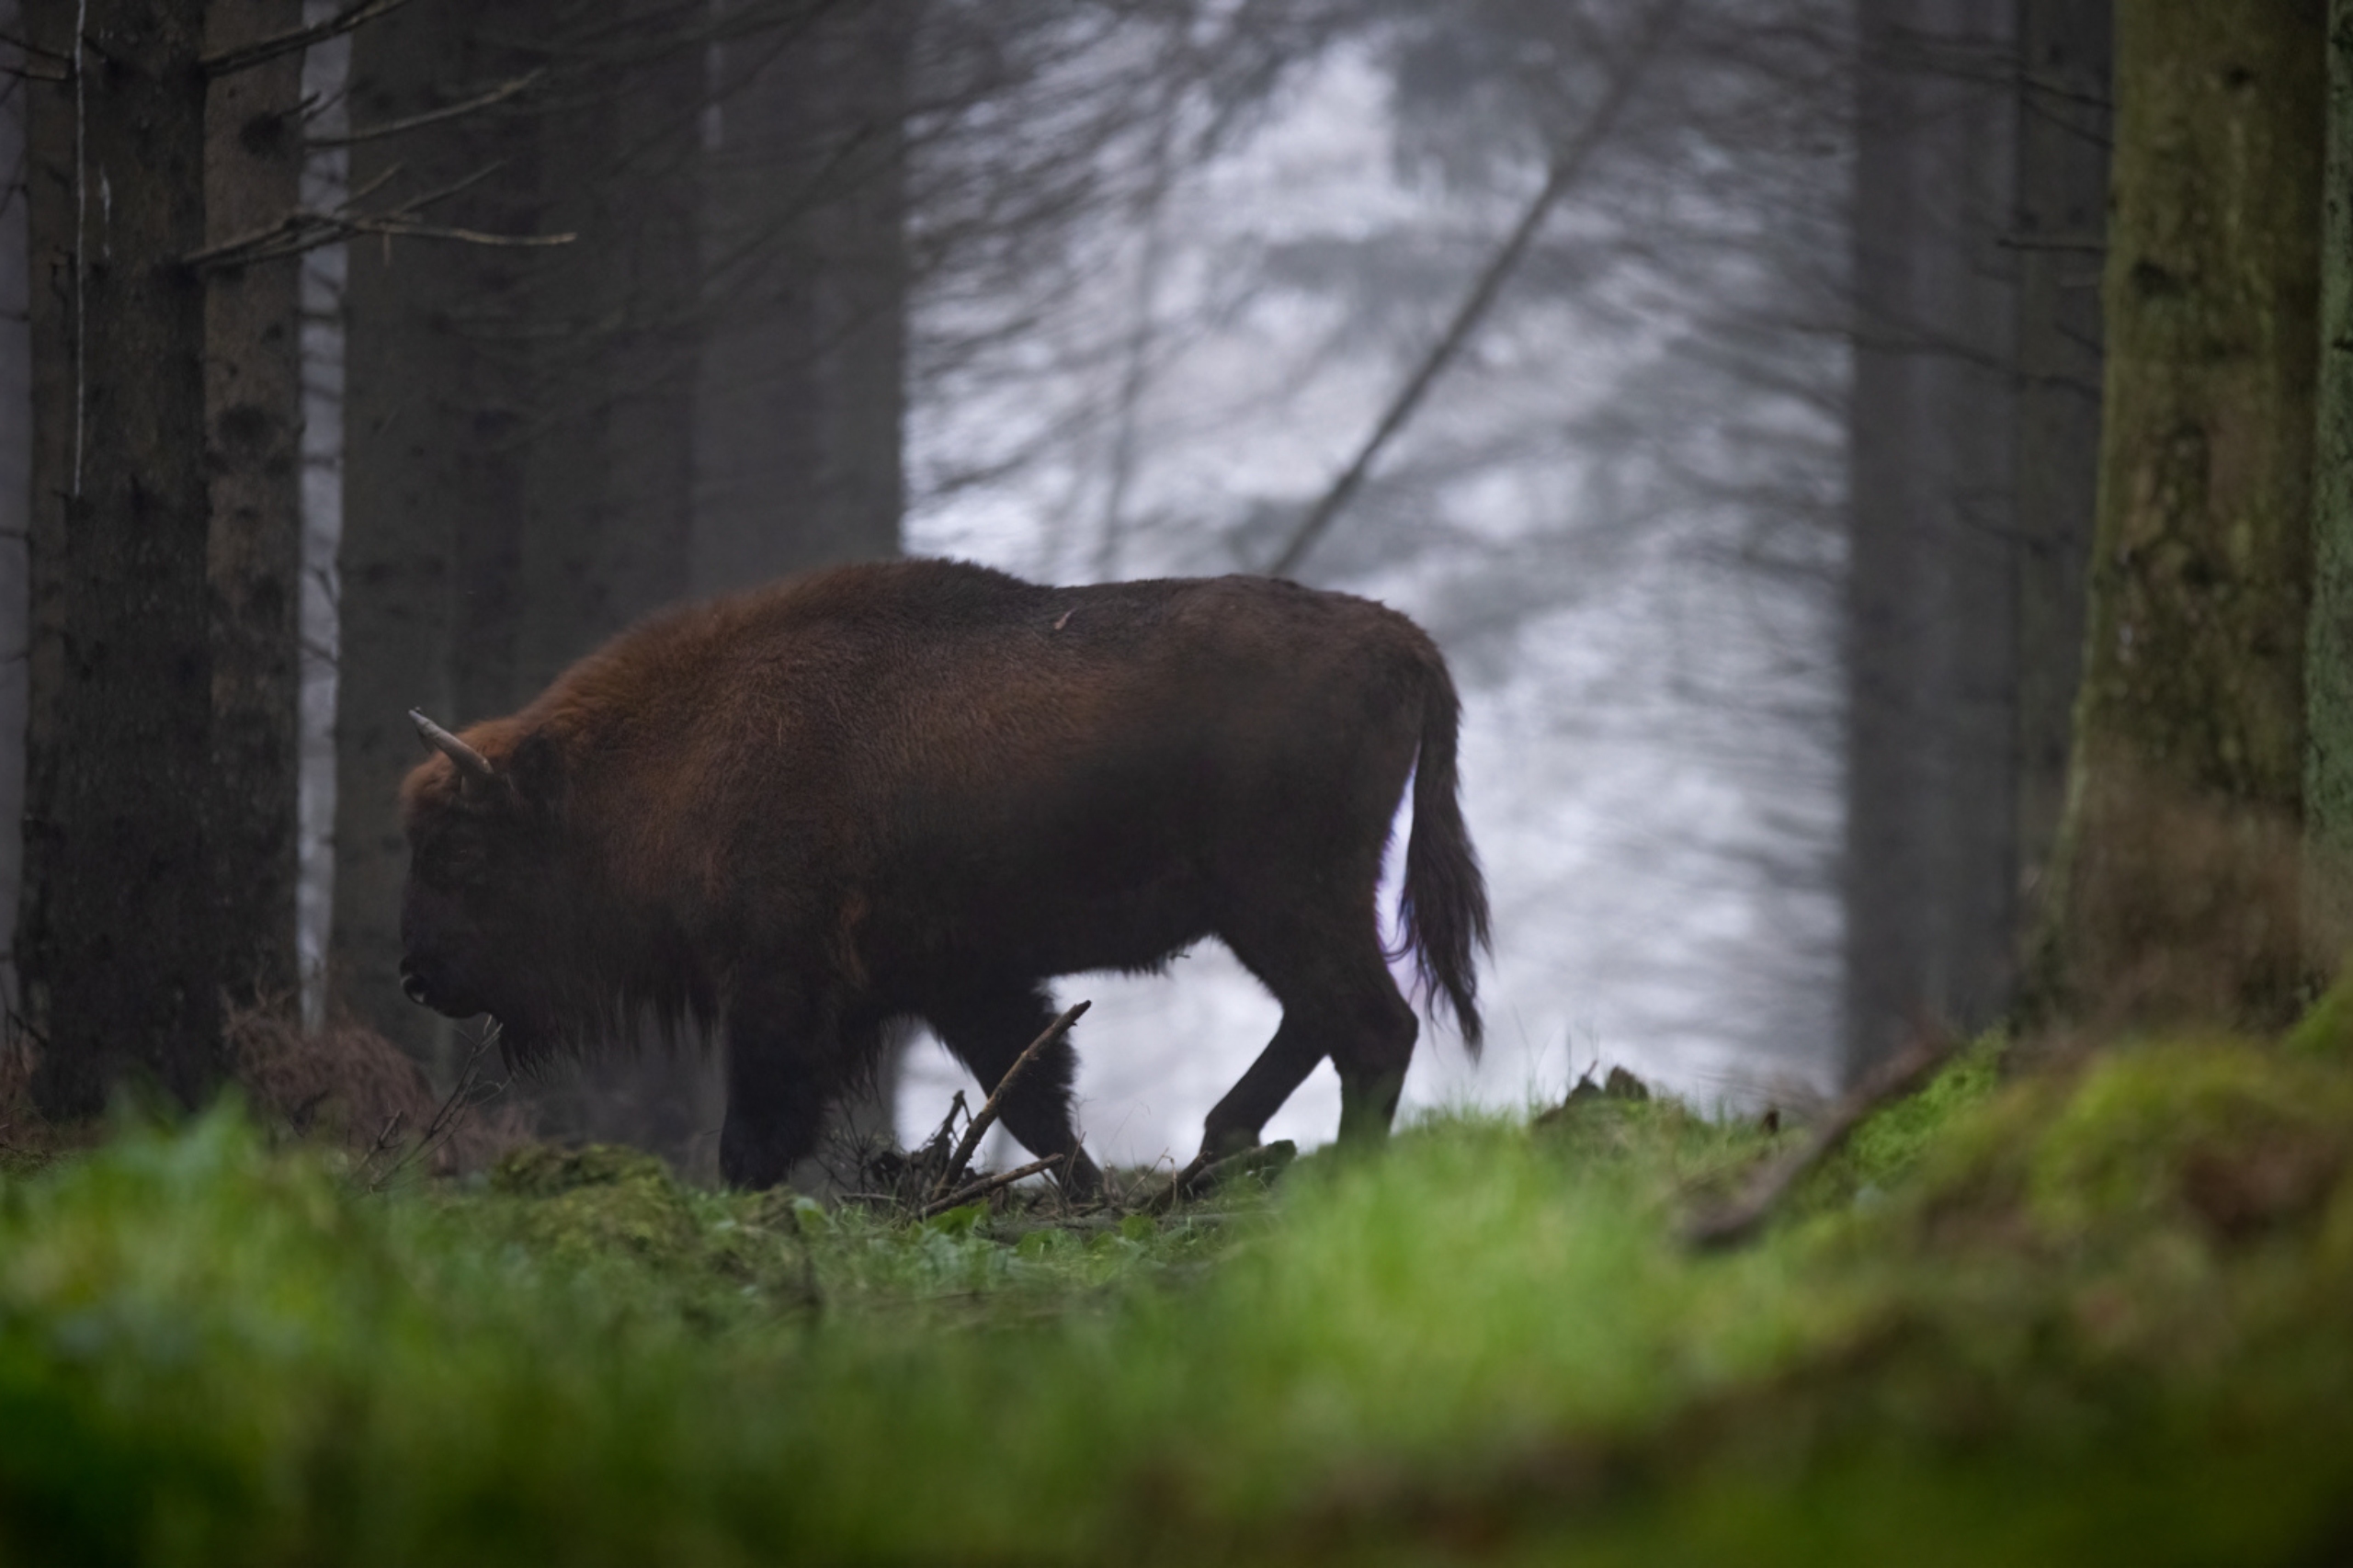 A population of European bison lives on Bornholm.